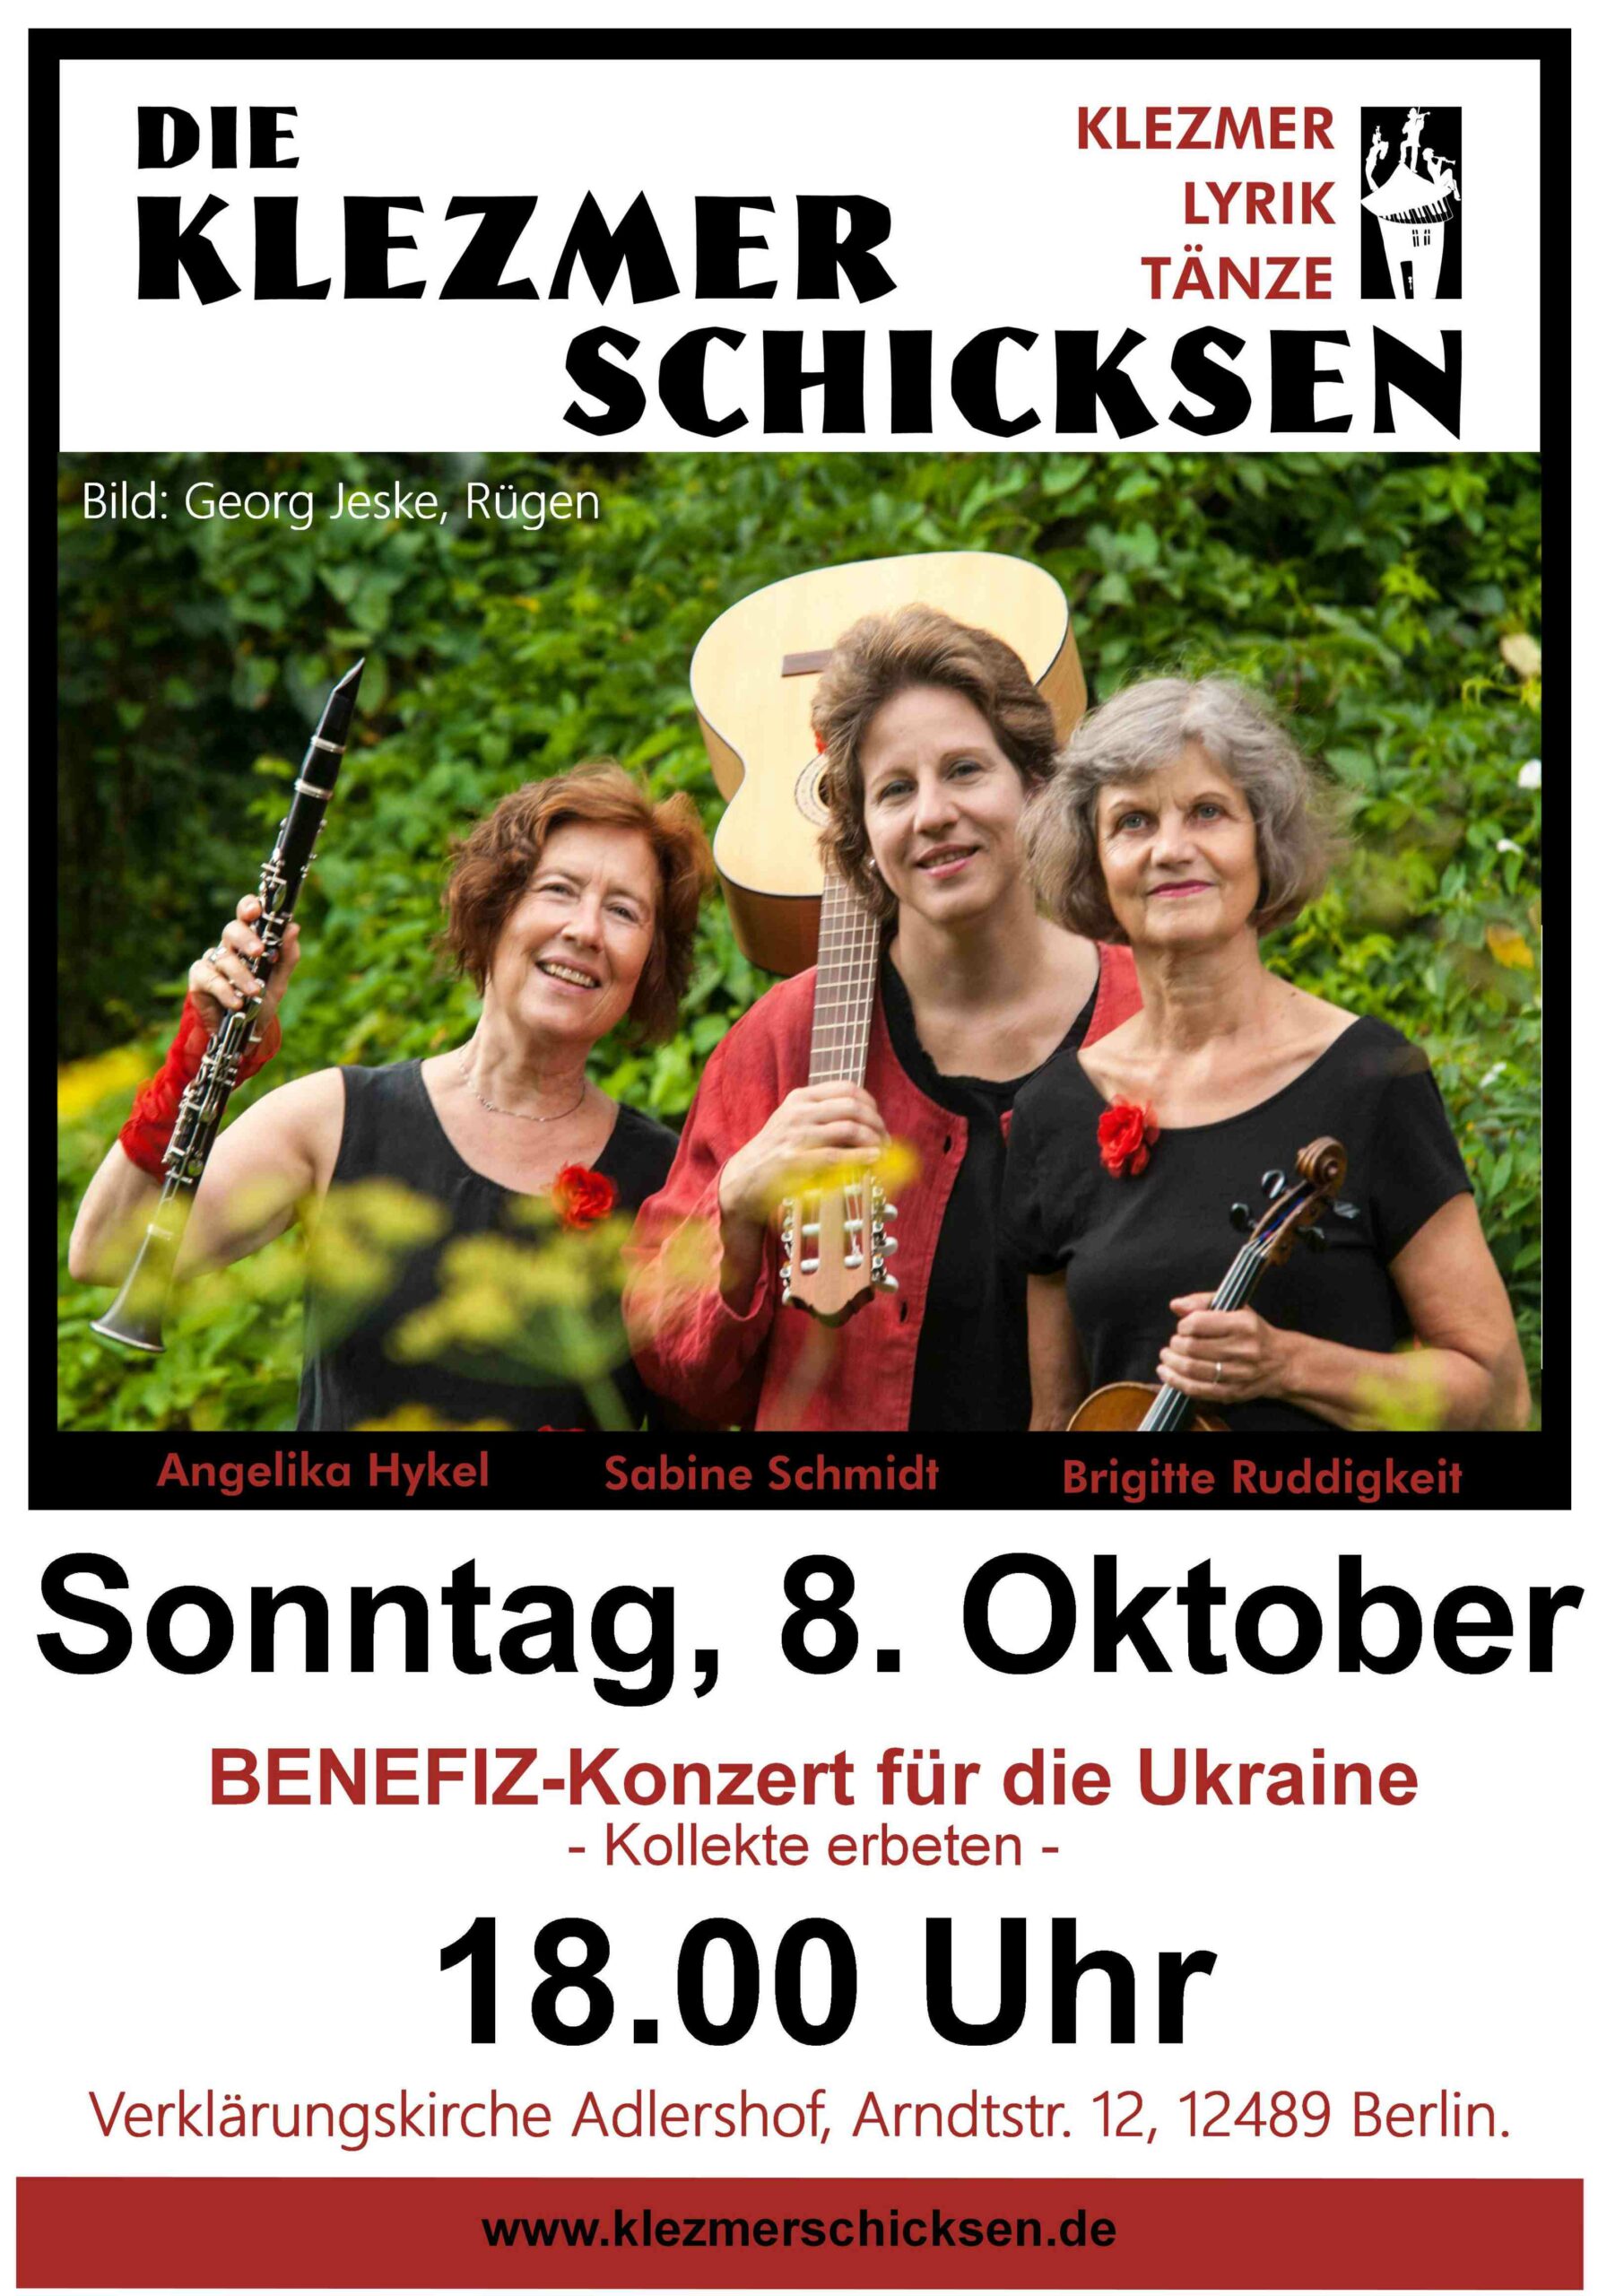 Konzert mit den "Klezmerschicksen" - Benefizkonzert zugunsten der Ukraine 18:00